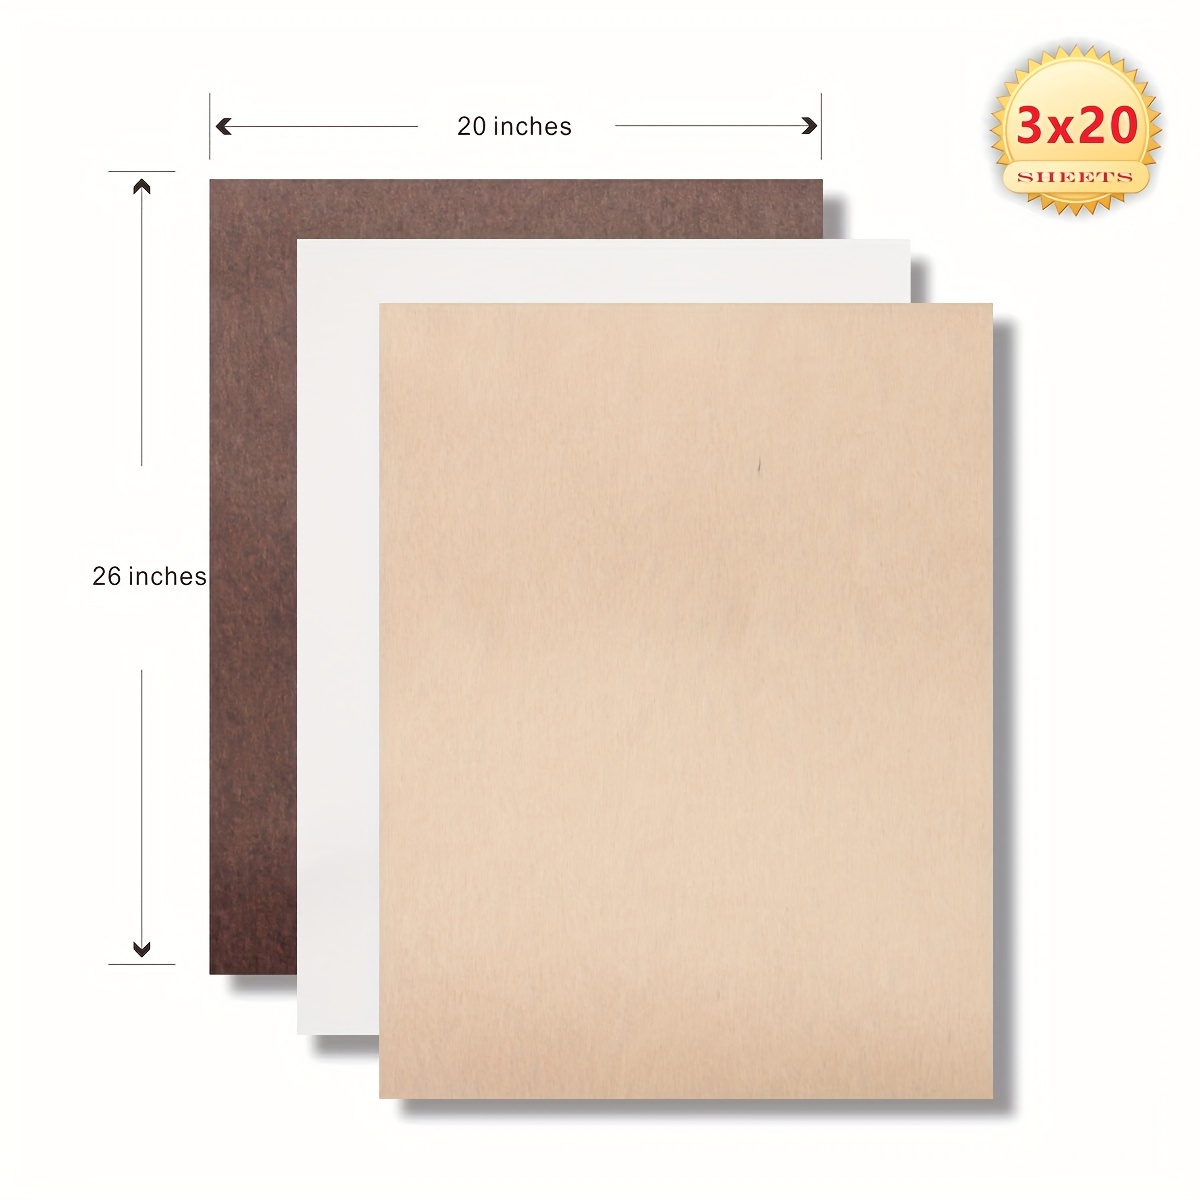 Premium White Tissue Paper 20 X 20 - 100 Sheet Pack